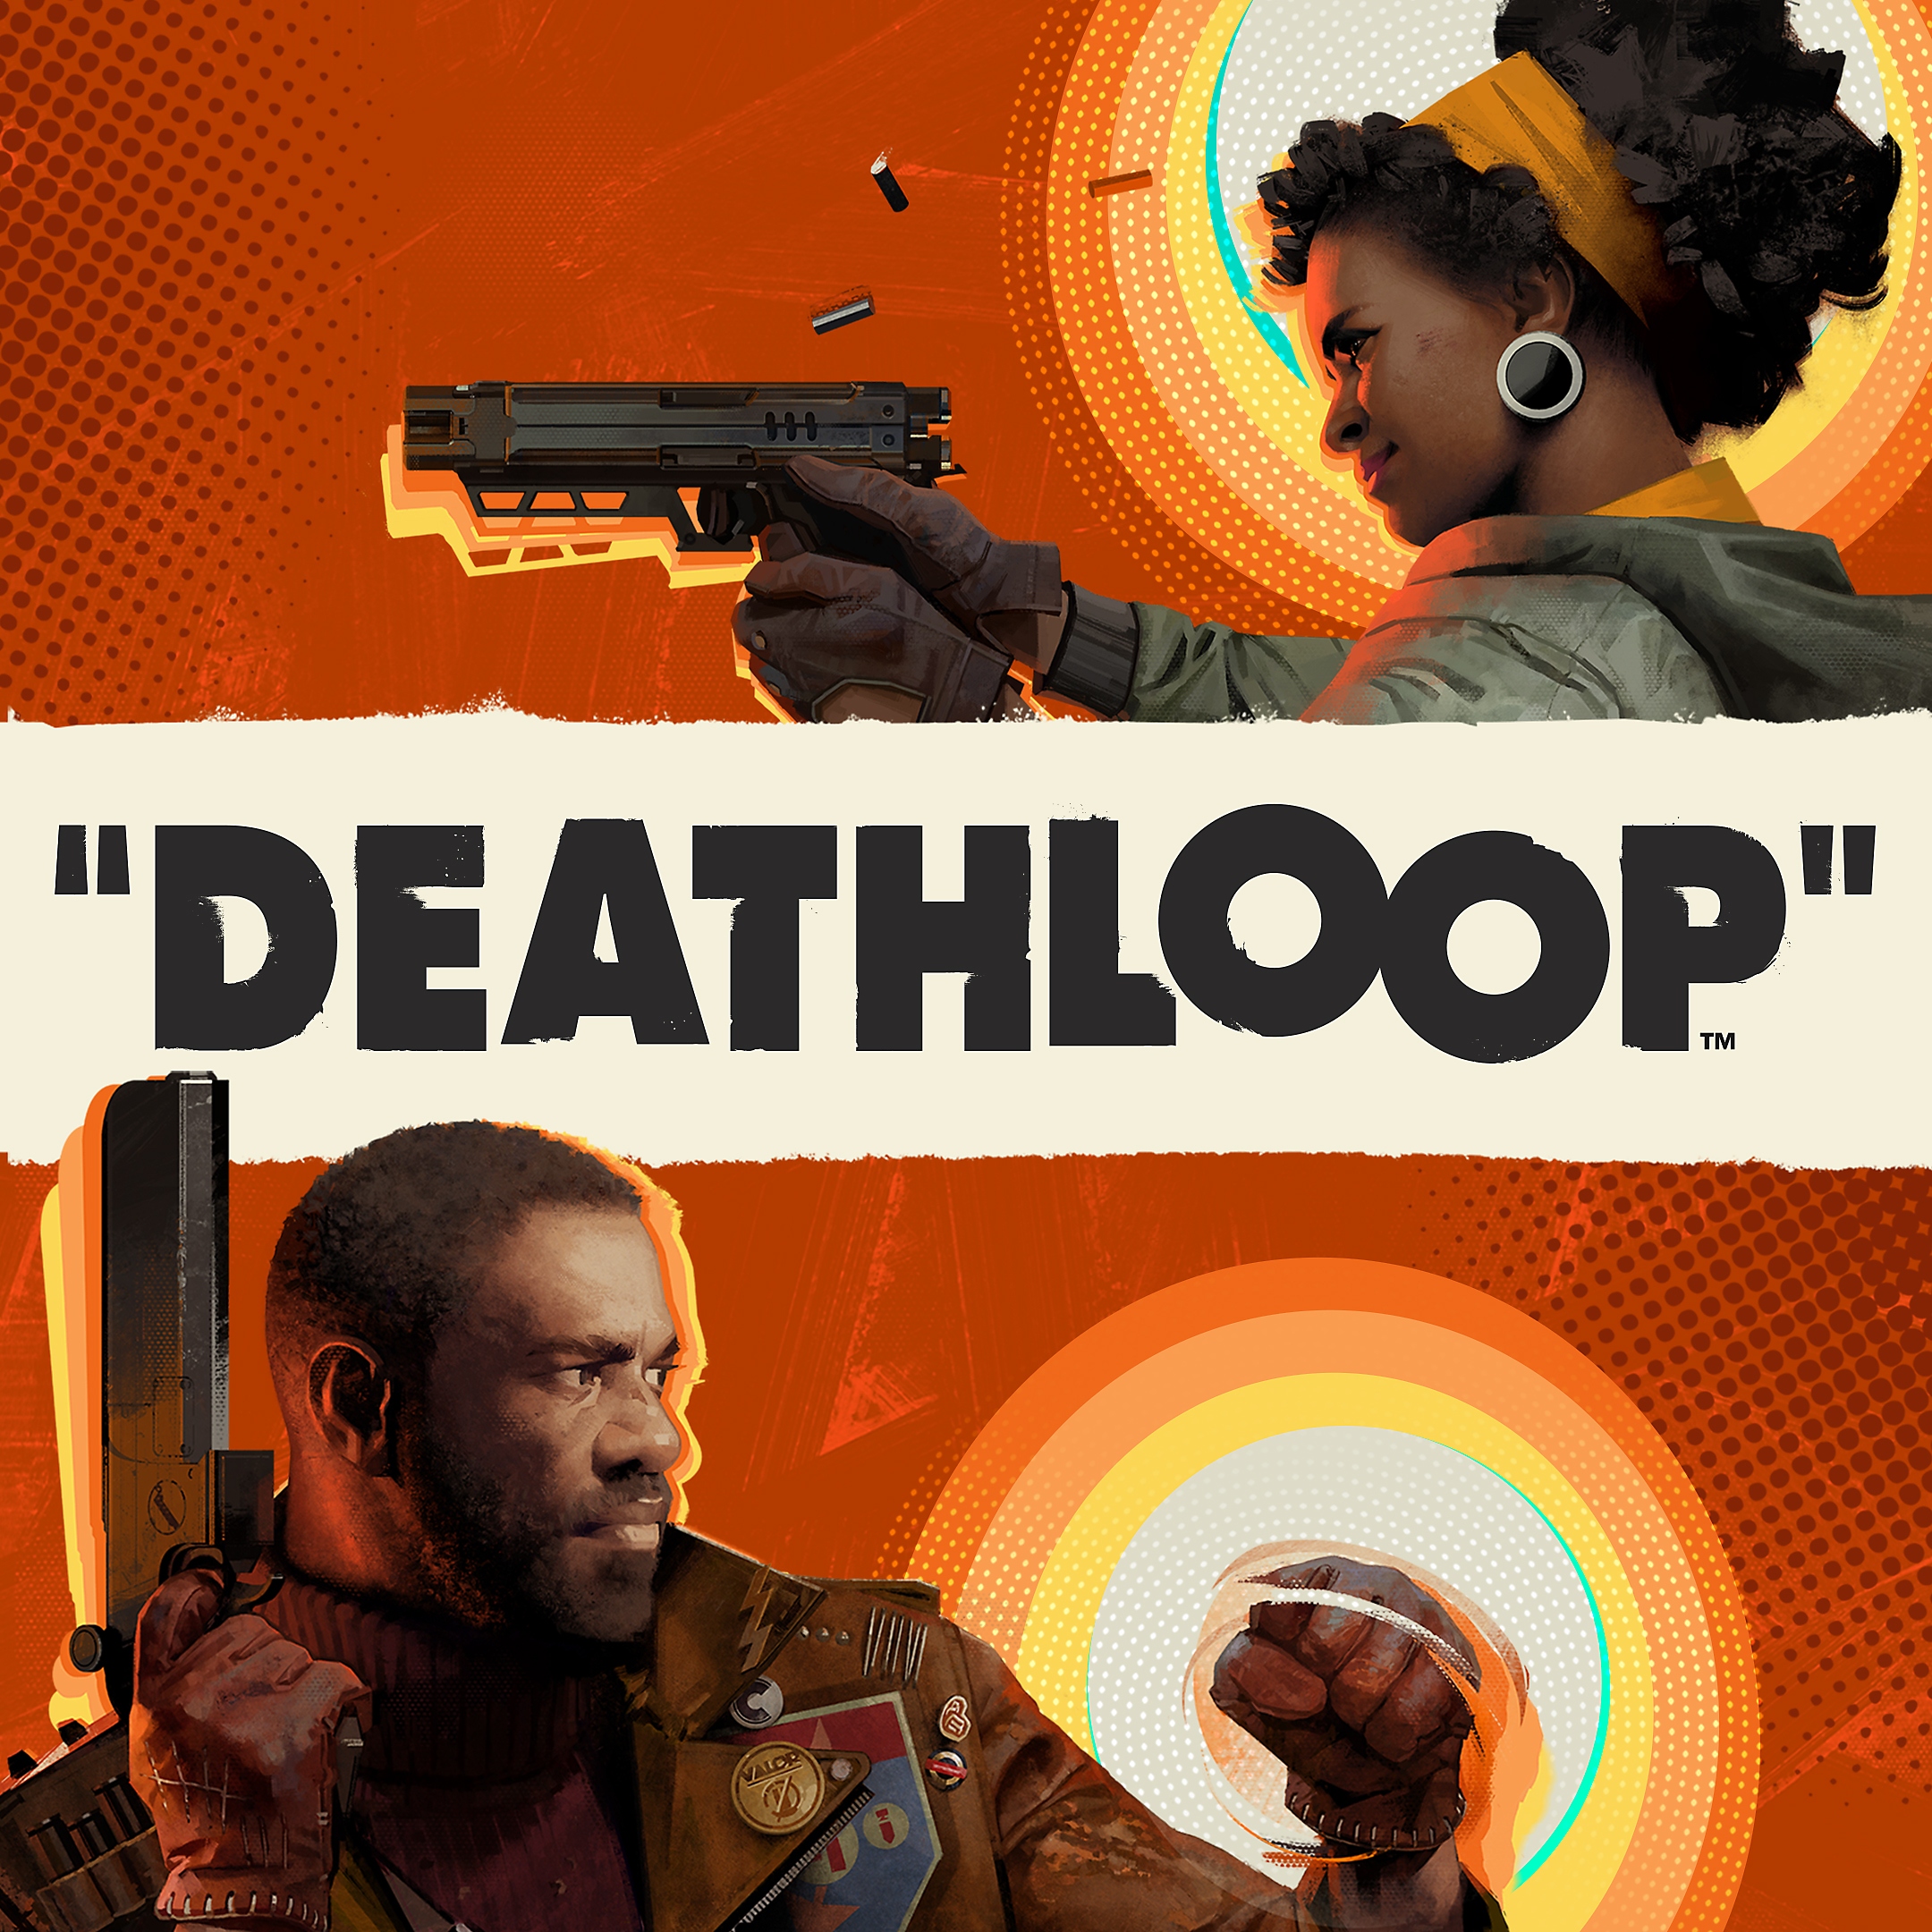 Deathloop cover art